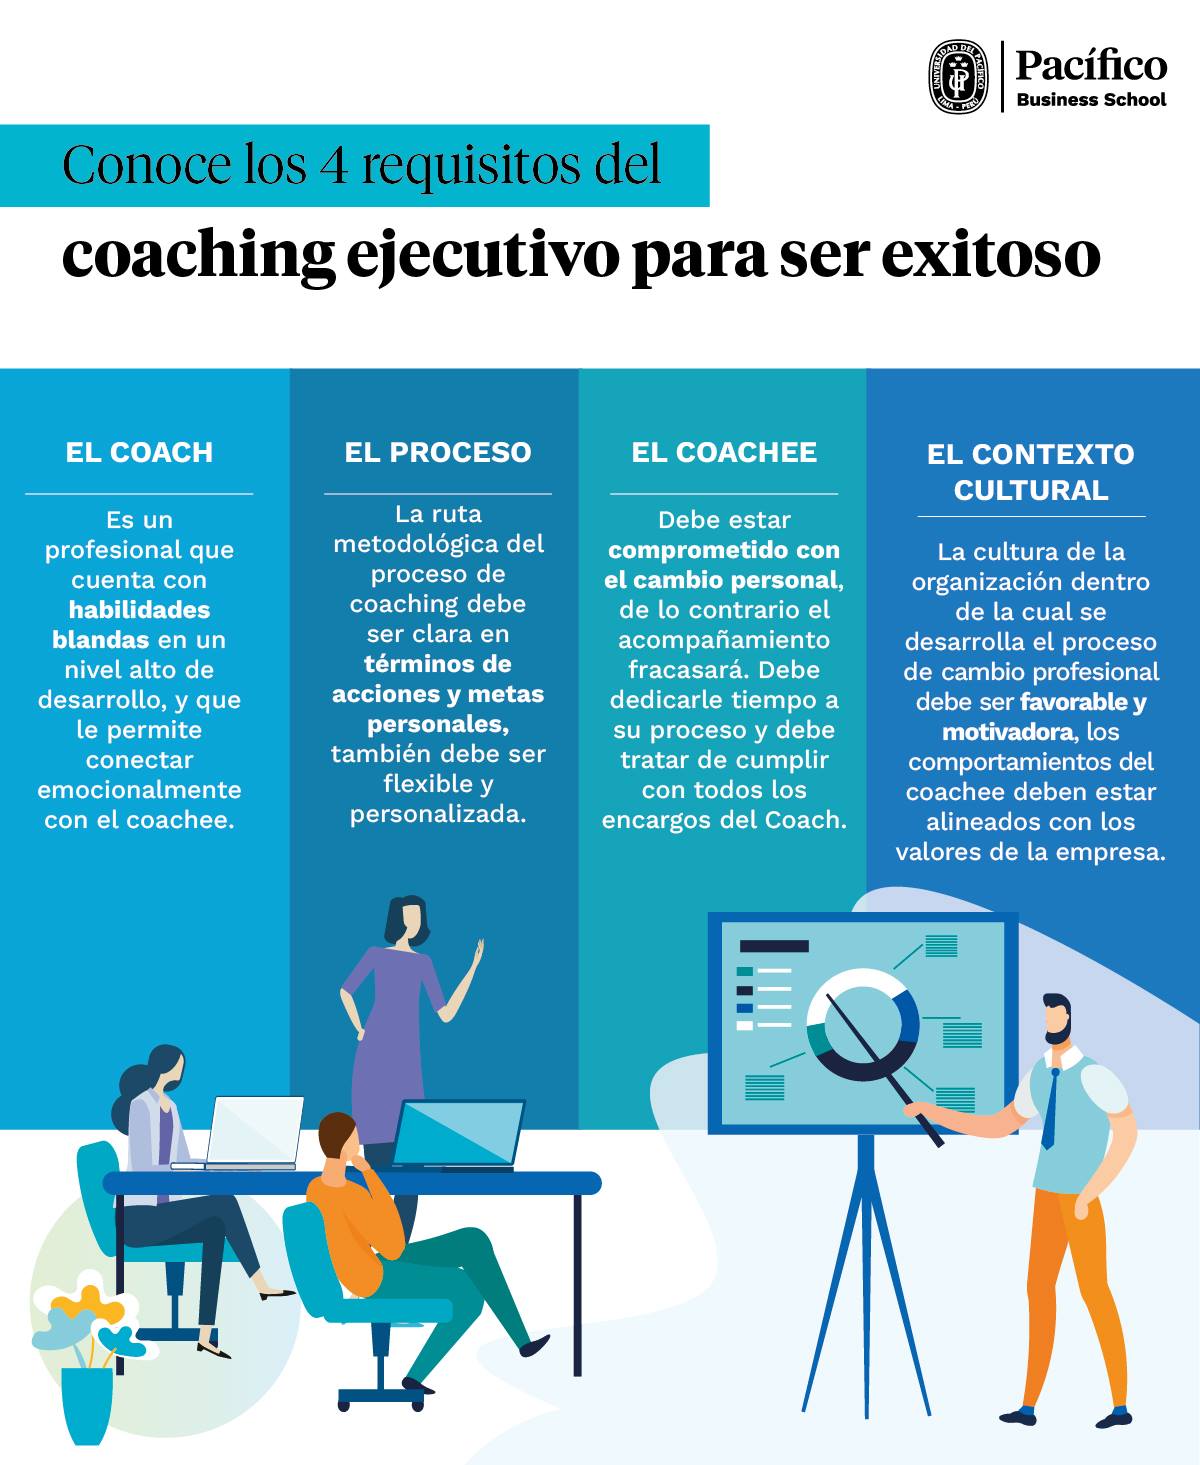 Coaching ejecutivo.jpg